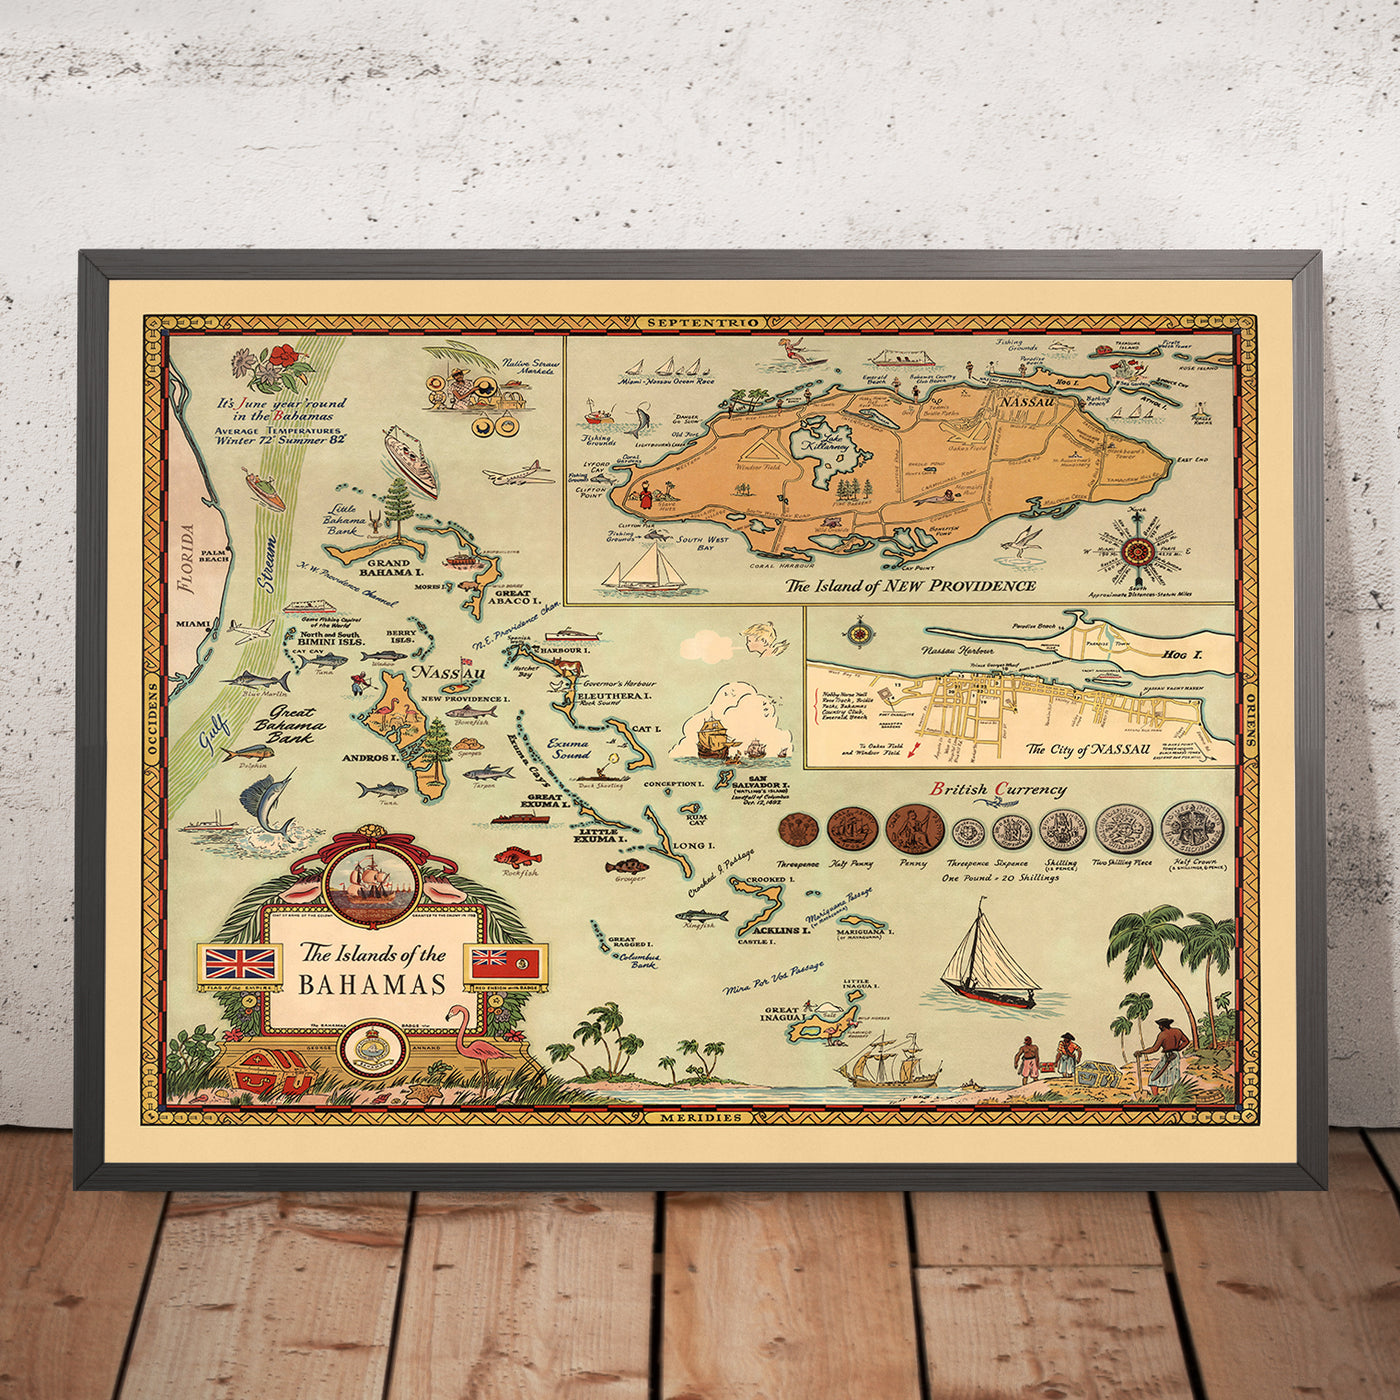 Mapa antiguo de las Bahamas, 1951: mapa temático pictórico de Nassau, Nueva Providencia y la vida en las Bahamas